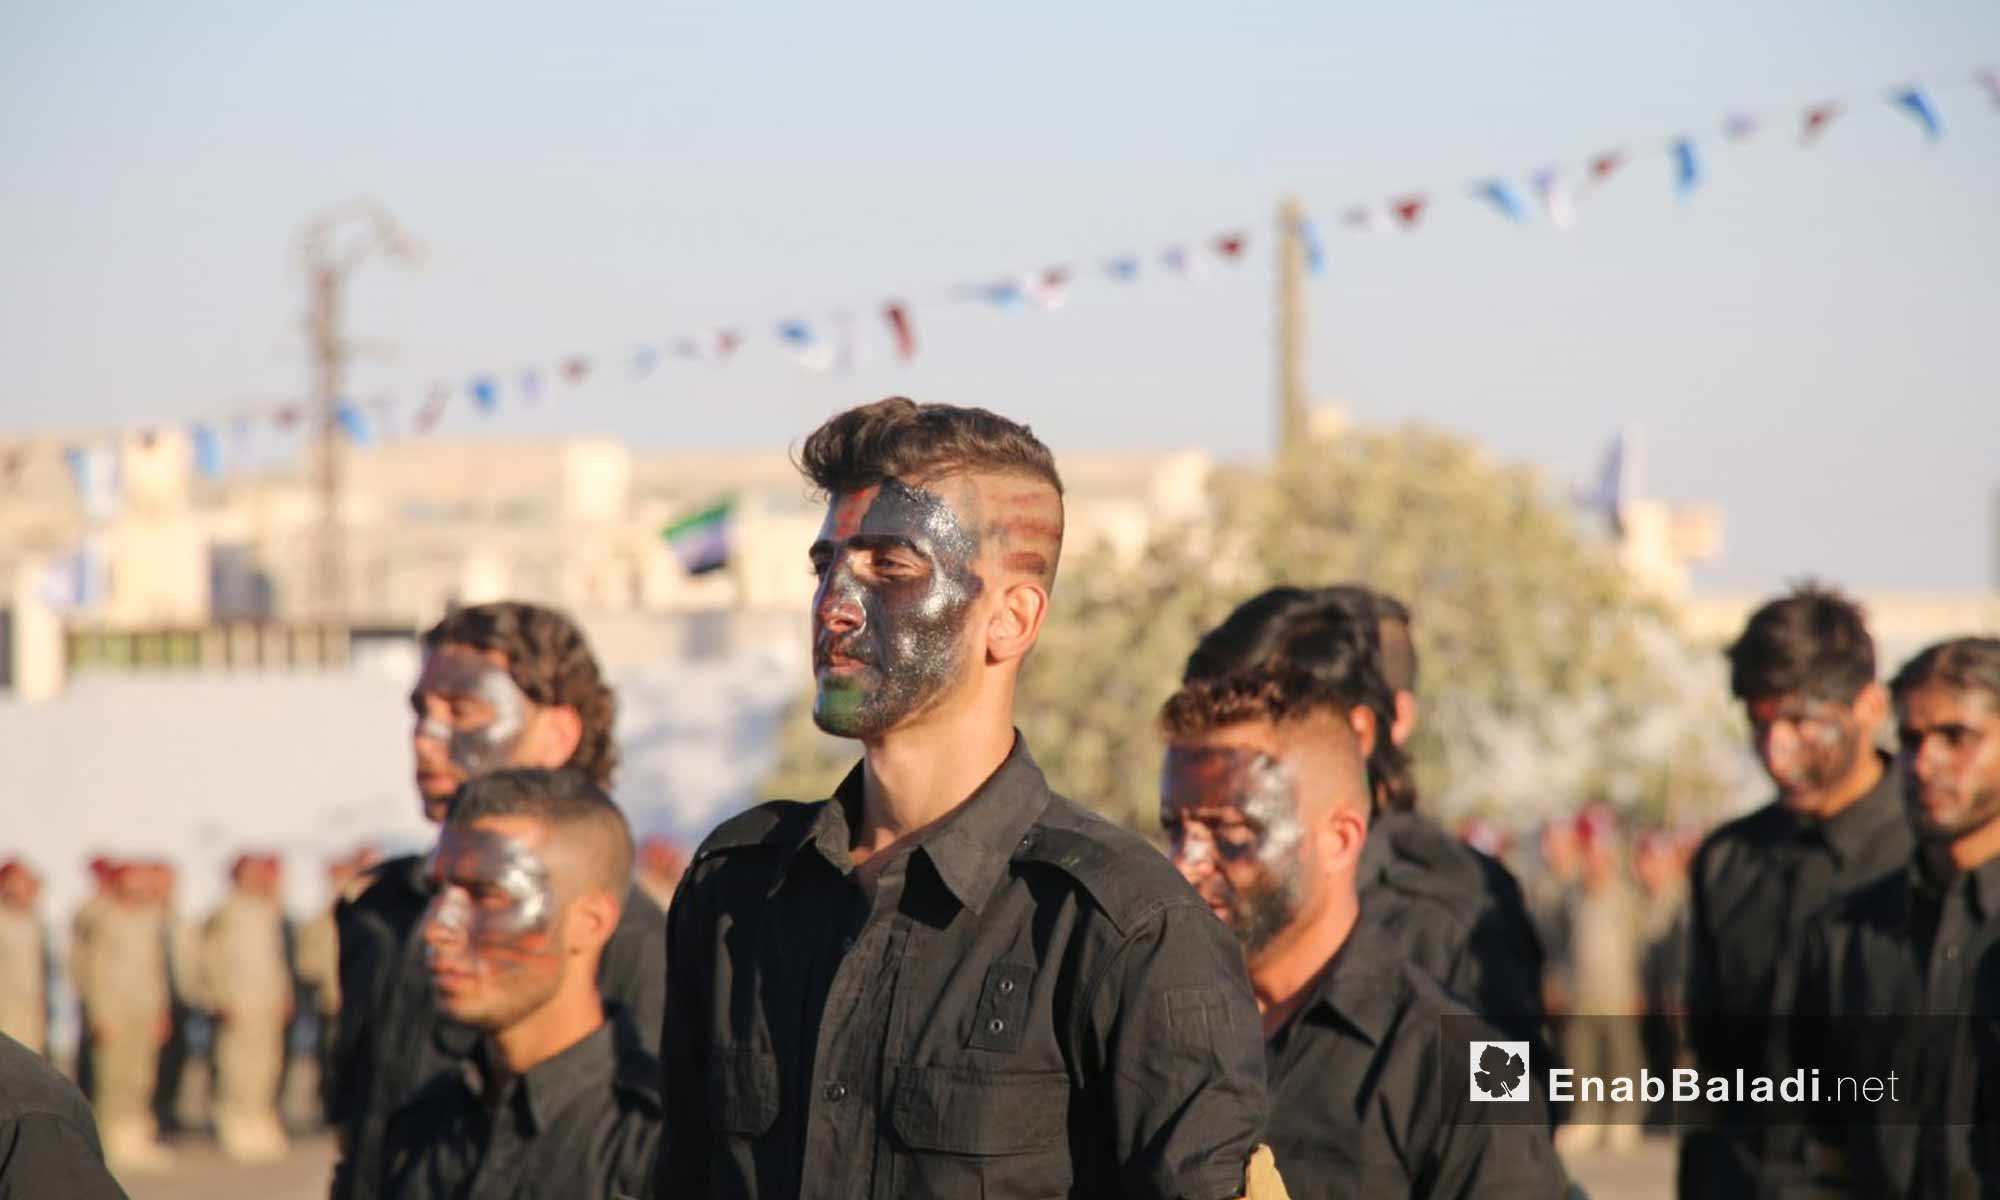 مقاتلون من فرقة الحمزة يؤدون عرضًا عسكريًا في افتتاح أول كلية عسكرية في ريف حلب الشمالي - 23 أيلول 2017 (عنب بلدي)